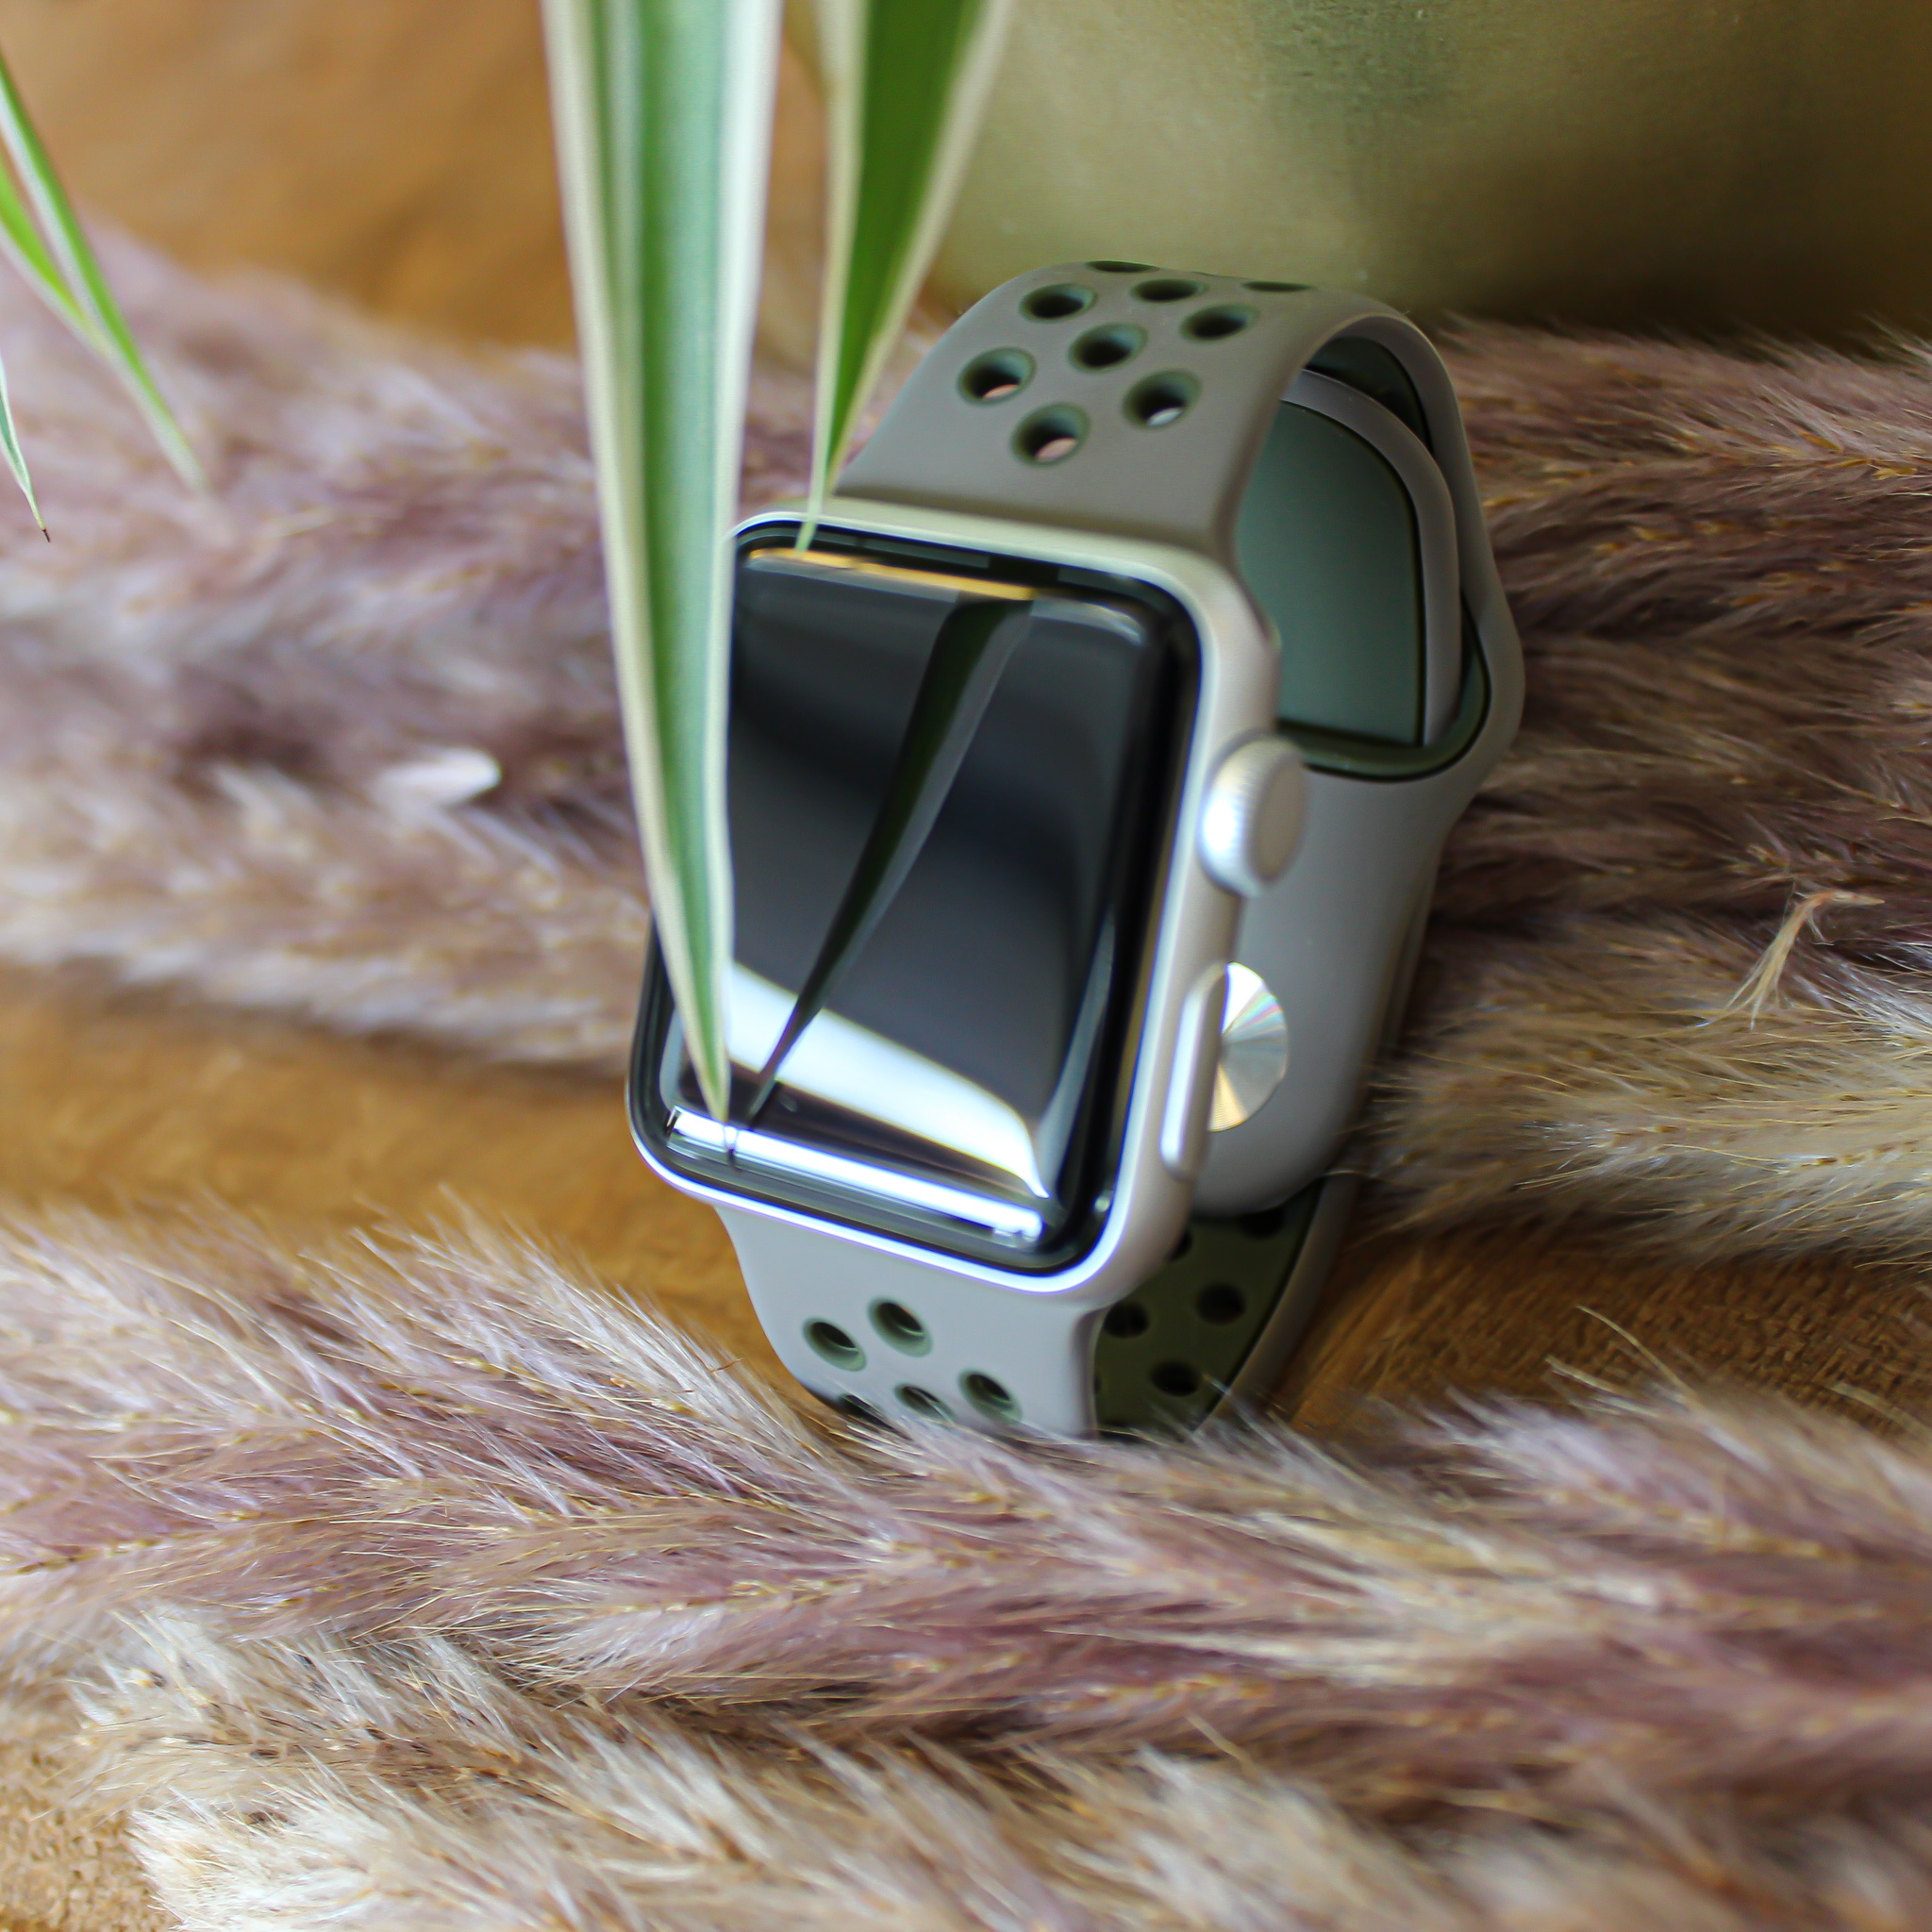 Apple Watch dubbel sport band - olijf grijs khaki